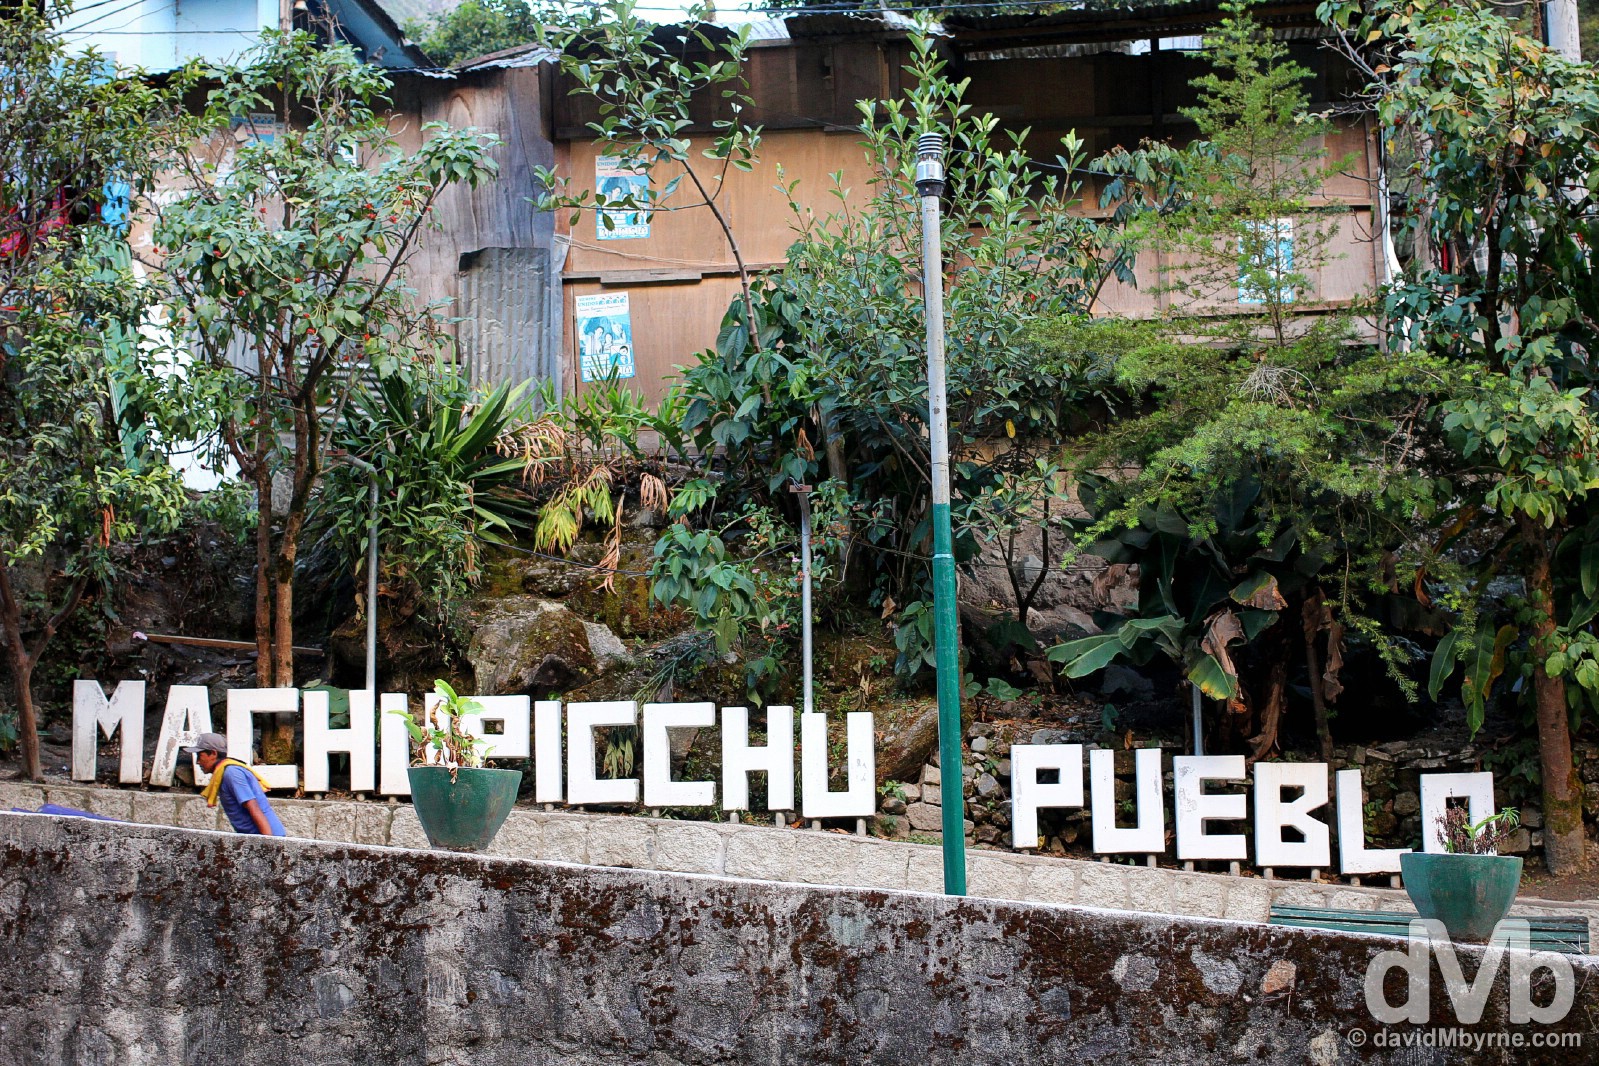 Machu Picchu Peublo/Aguas Calientes, Peru. August 14, 2015.